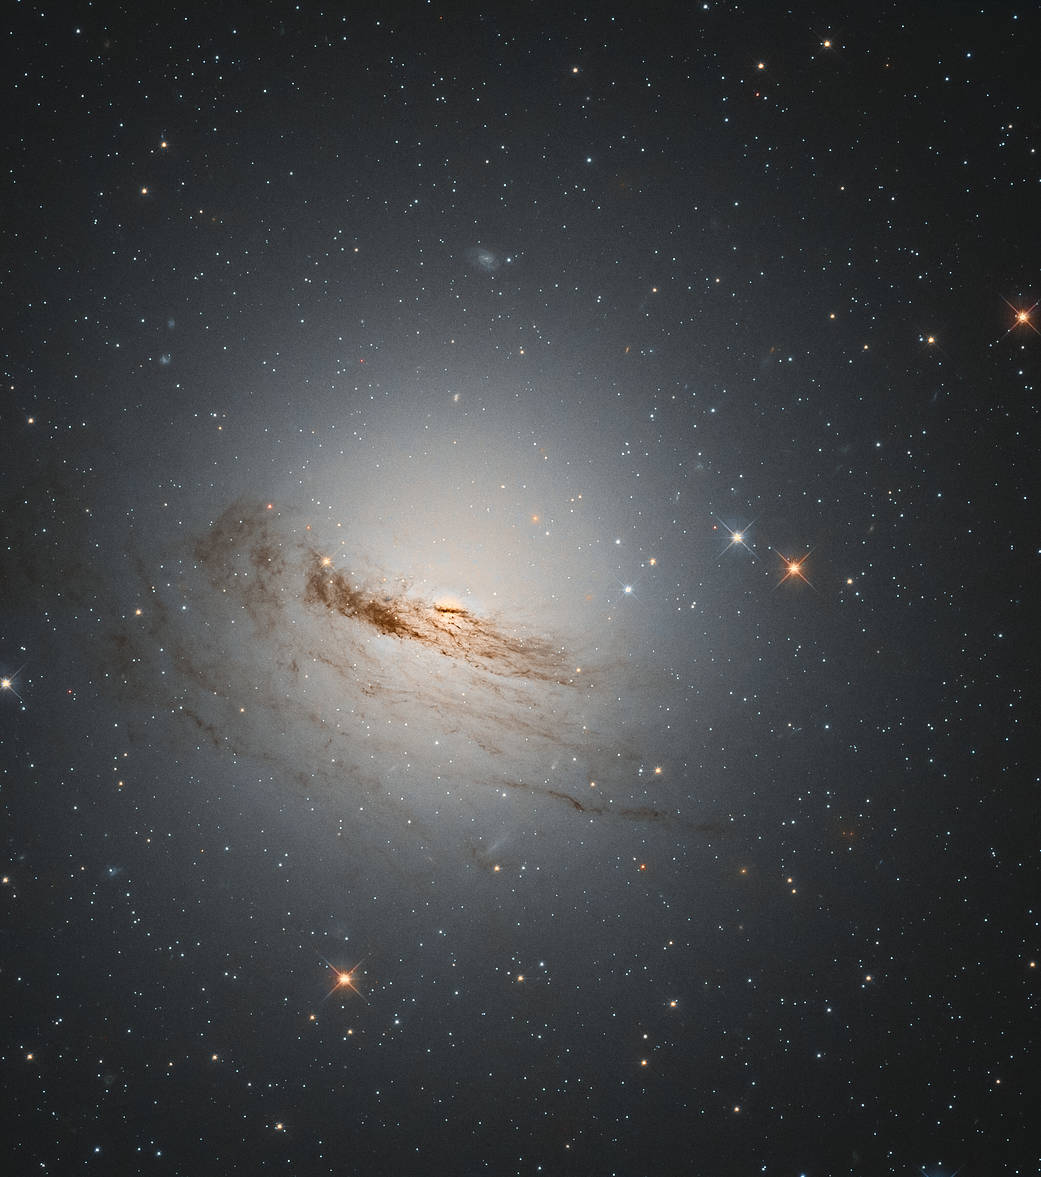 El telescopio Hubble captura una imagen de una galaxia moribunda